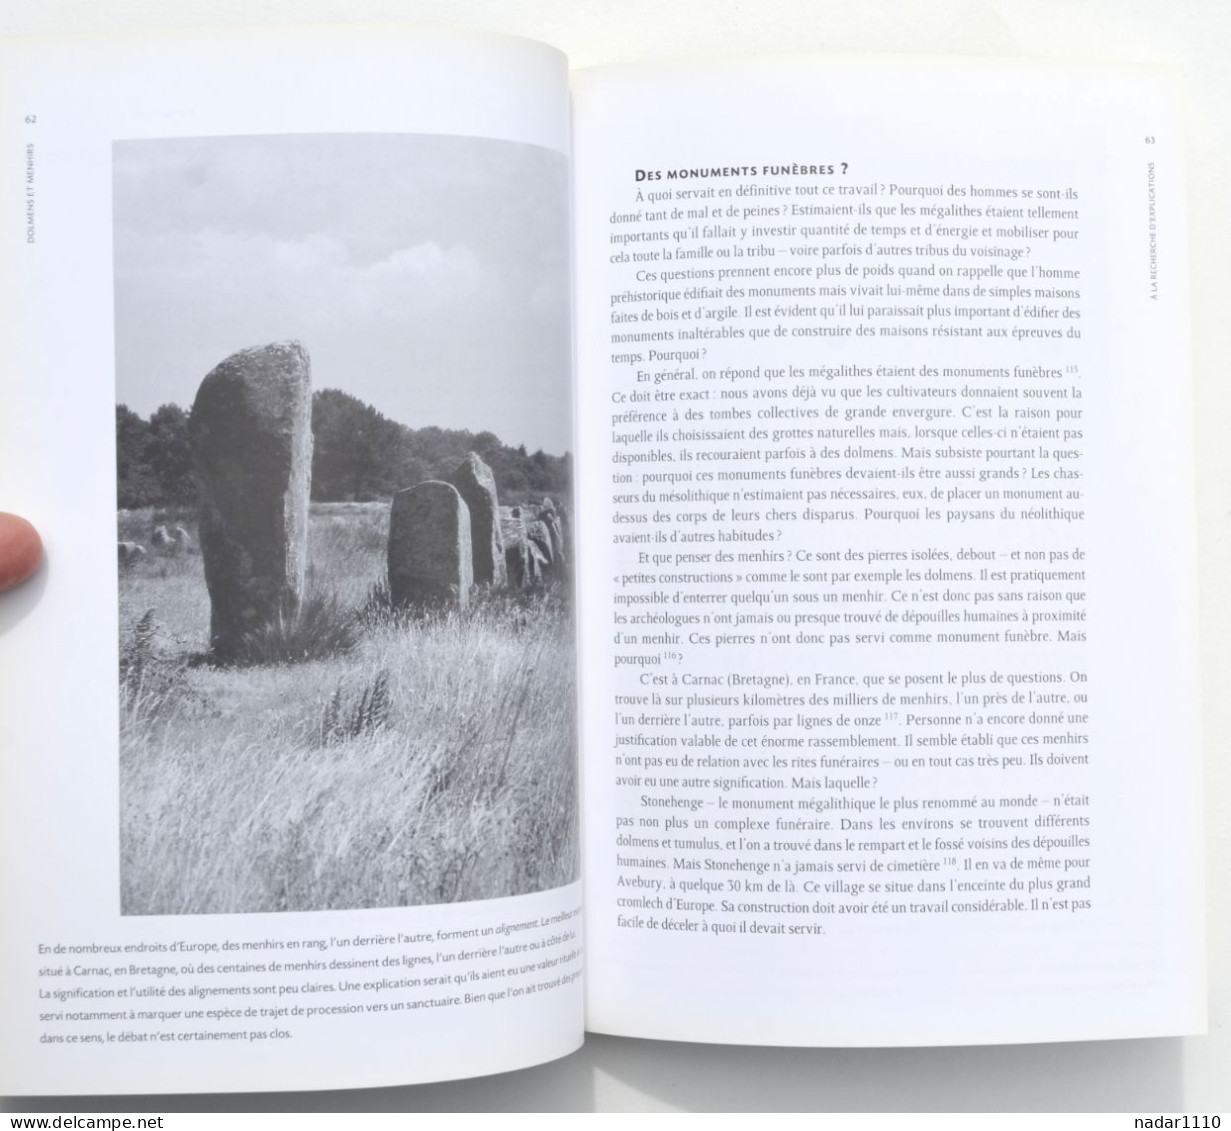 Dolmens et menhirs - Secrets et fantasmes - Herman Clerinx / Wéris, Stein, mégalithe